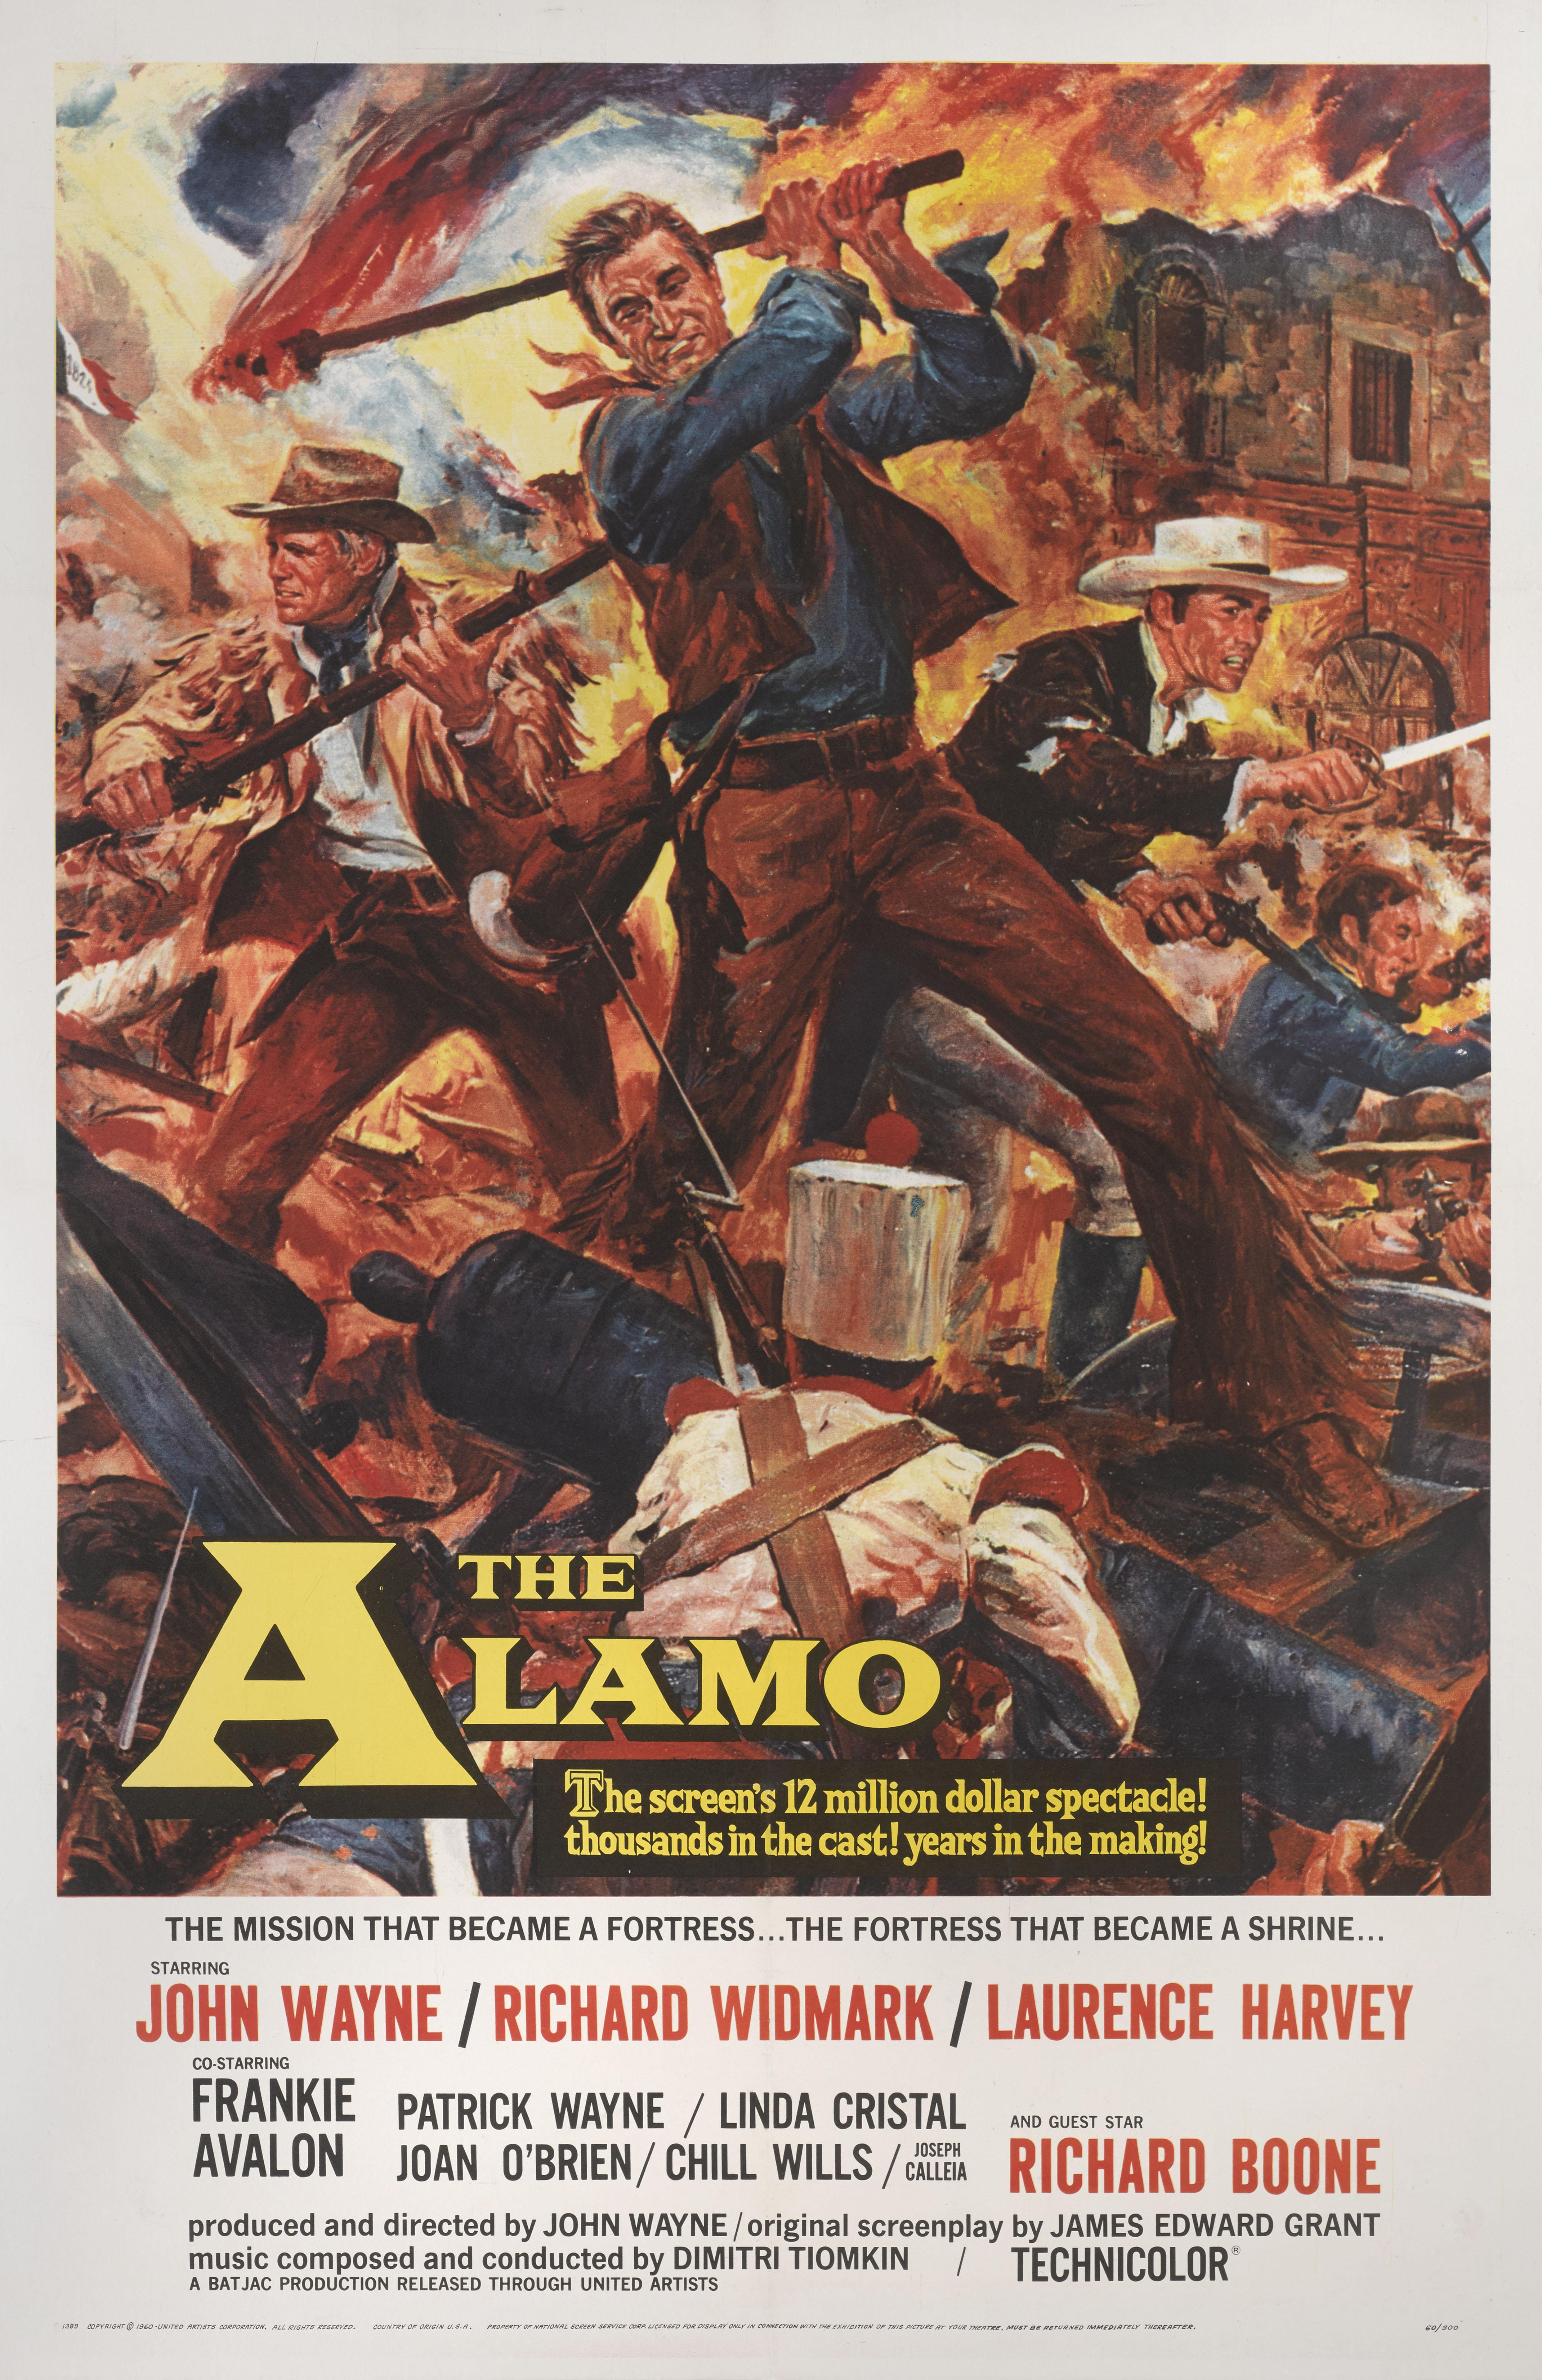 Original US-Filmplakat für den Film 1960  Drama, Abenteuerfilm. John Wayne führte bei diesem Film Regie und spielte die Hauptrolle.
Das Kunstwerk auf diesem Poster stammt von dem amerikanischen Realisten Reynold Brown (1917-1991).
Dieses Plakat ist